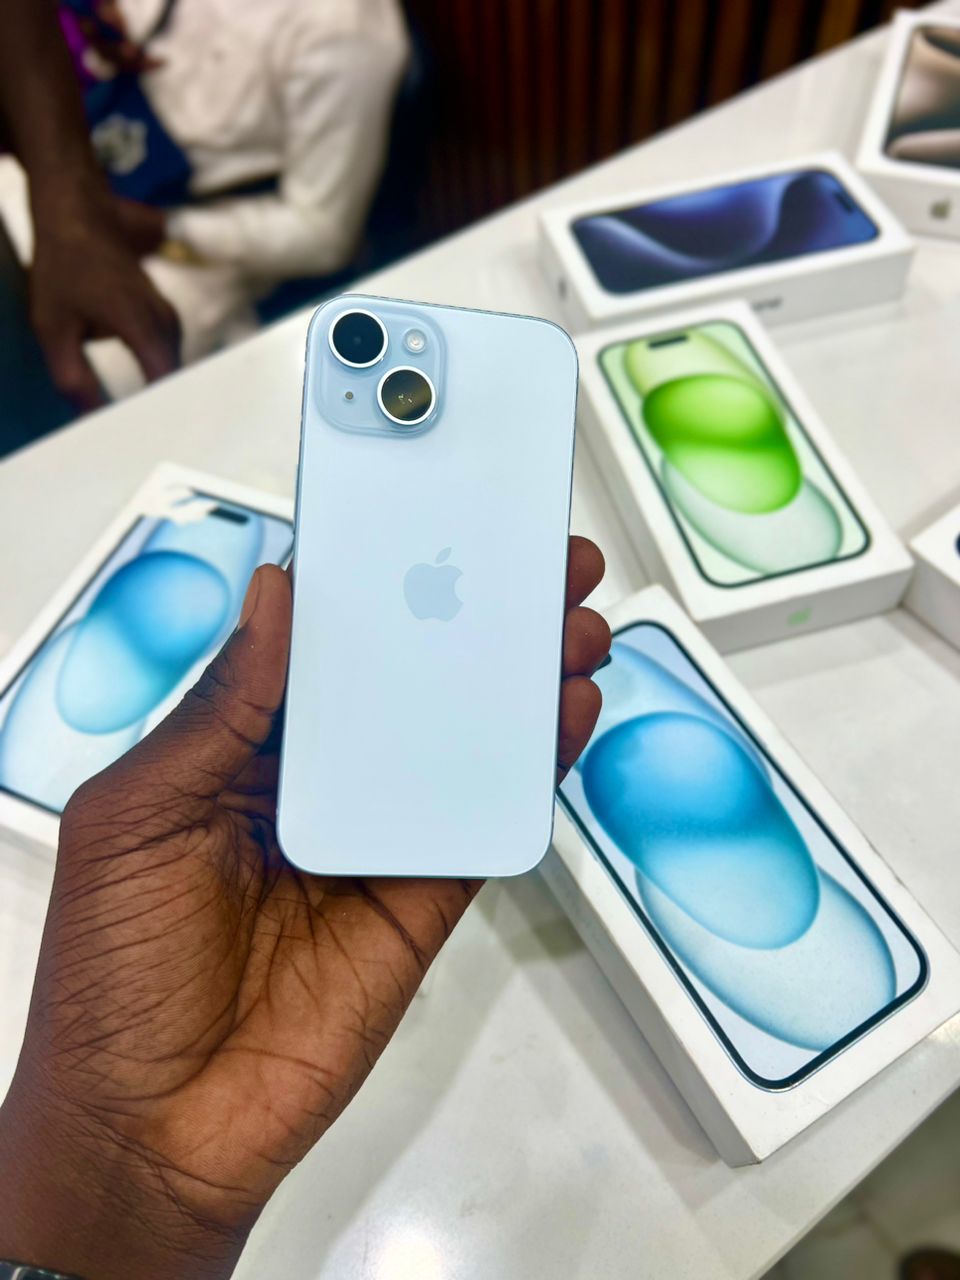 Iphone 15 128 Go - L'iPhone 15 est un smartphone d'Apple annoncé le 12 septembre 2022. Il reprend la Dynamic Island introduite par l'iPhone 14 Pro et embarque un écran OLED de 6,1 pouces jusqu'à presque 2 fois plus lumineux (par rapport à la version précédente) avec un taux de rafraîchissement de 60 Hz et un SoC Apple A16. Il introduit également un nouveau capteur principal de 48 mégapixels et reprend le dos en verre dépoli de la version Pro.